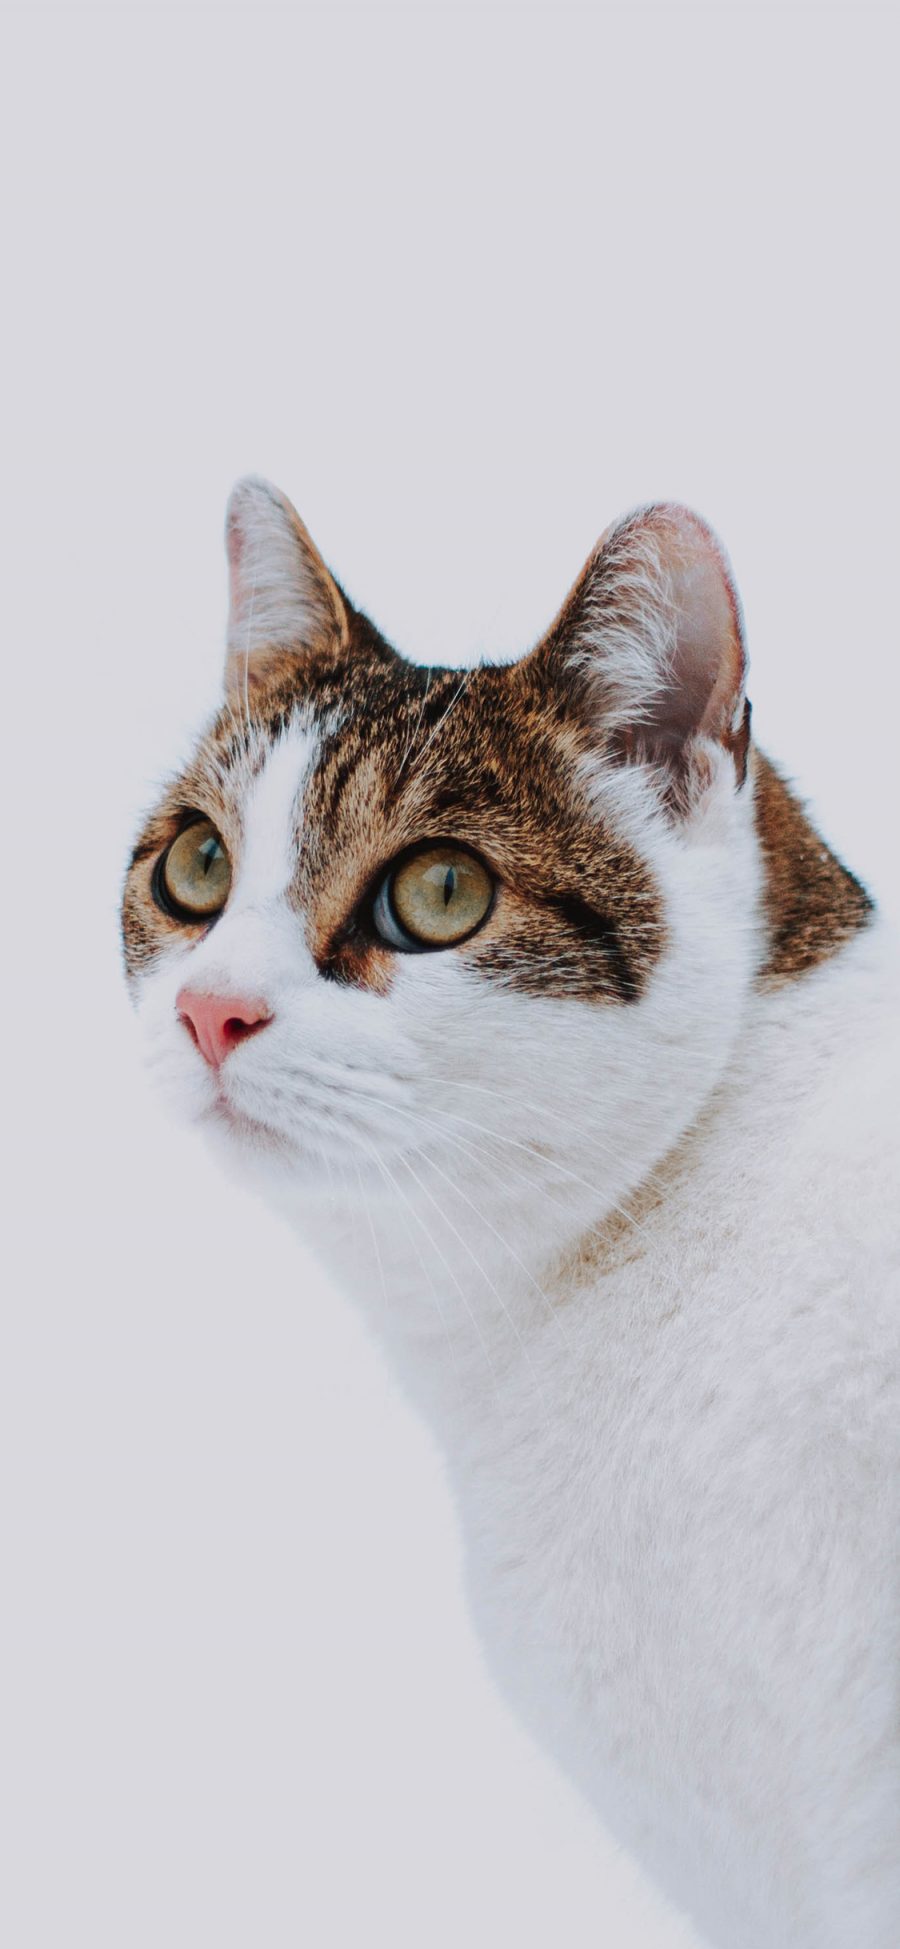 [2436×1125]猫咪 喵星人 宠物 萌 苹果手机壁纸图片